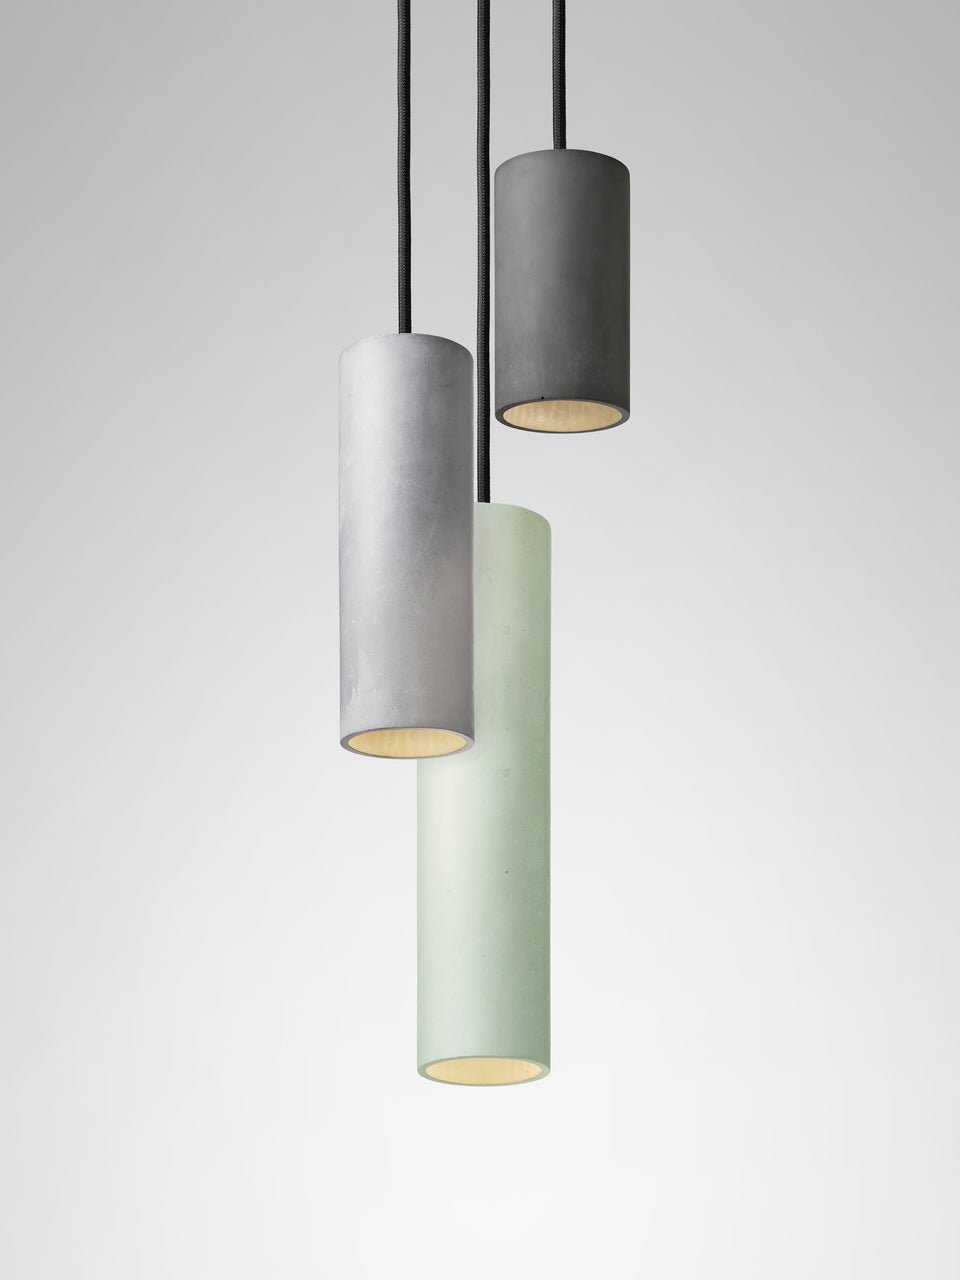 Cromia Trio pendant lamp